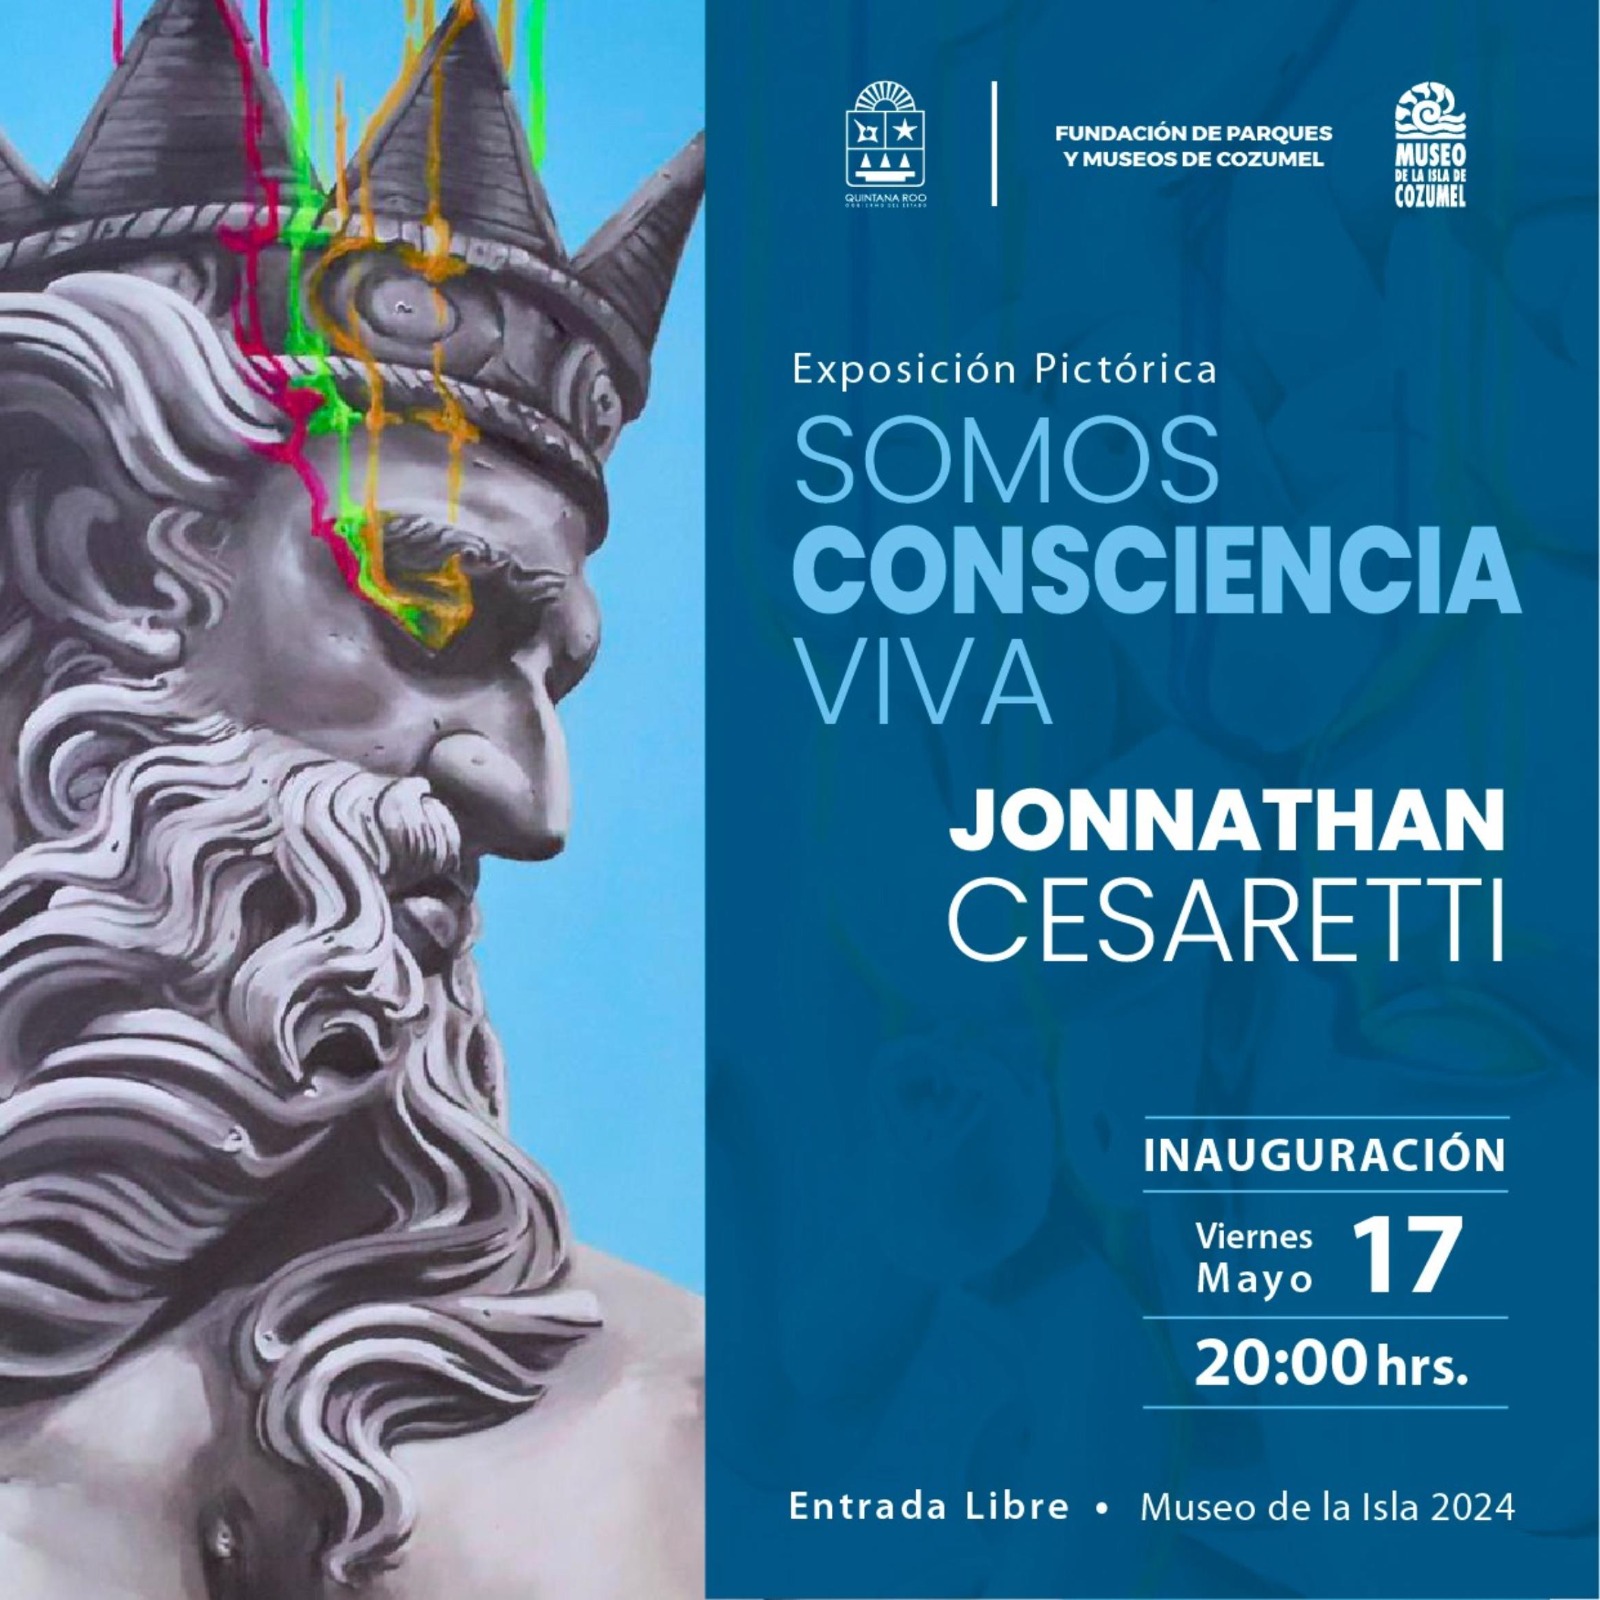 Realizarán exposición Somos Consciencia Viva” del artista Jonnathan Cesaretti en Cozumel